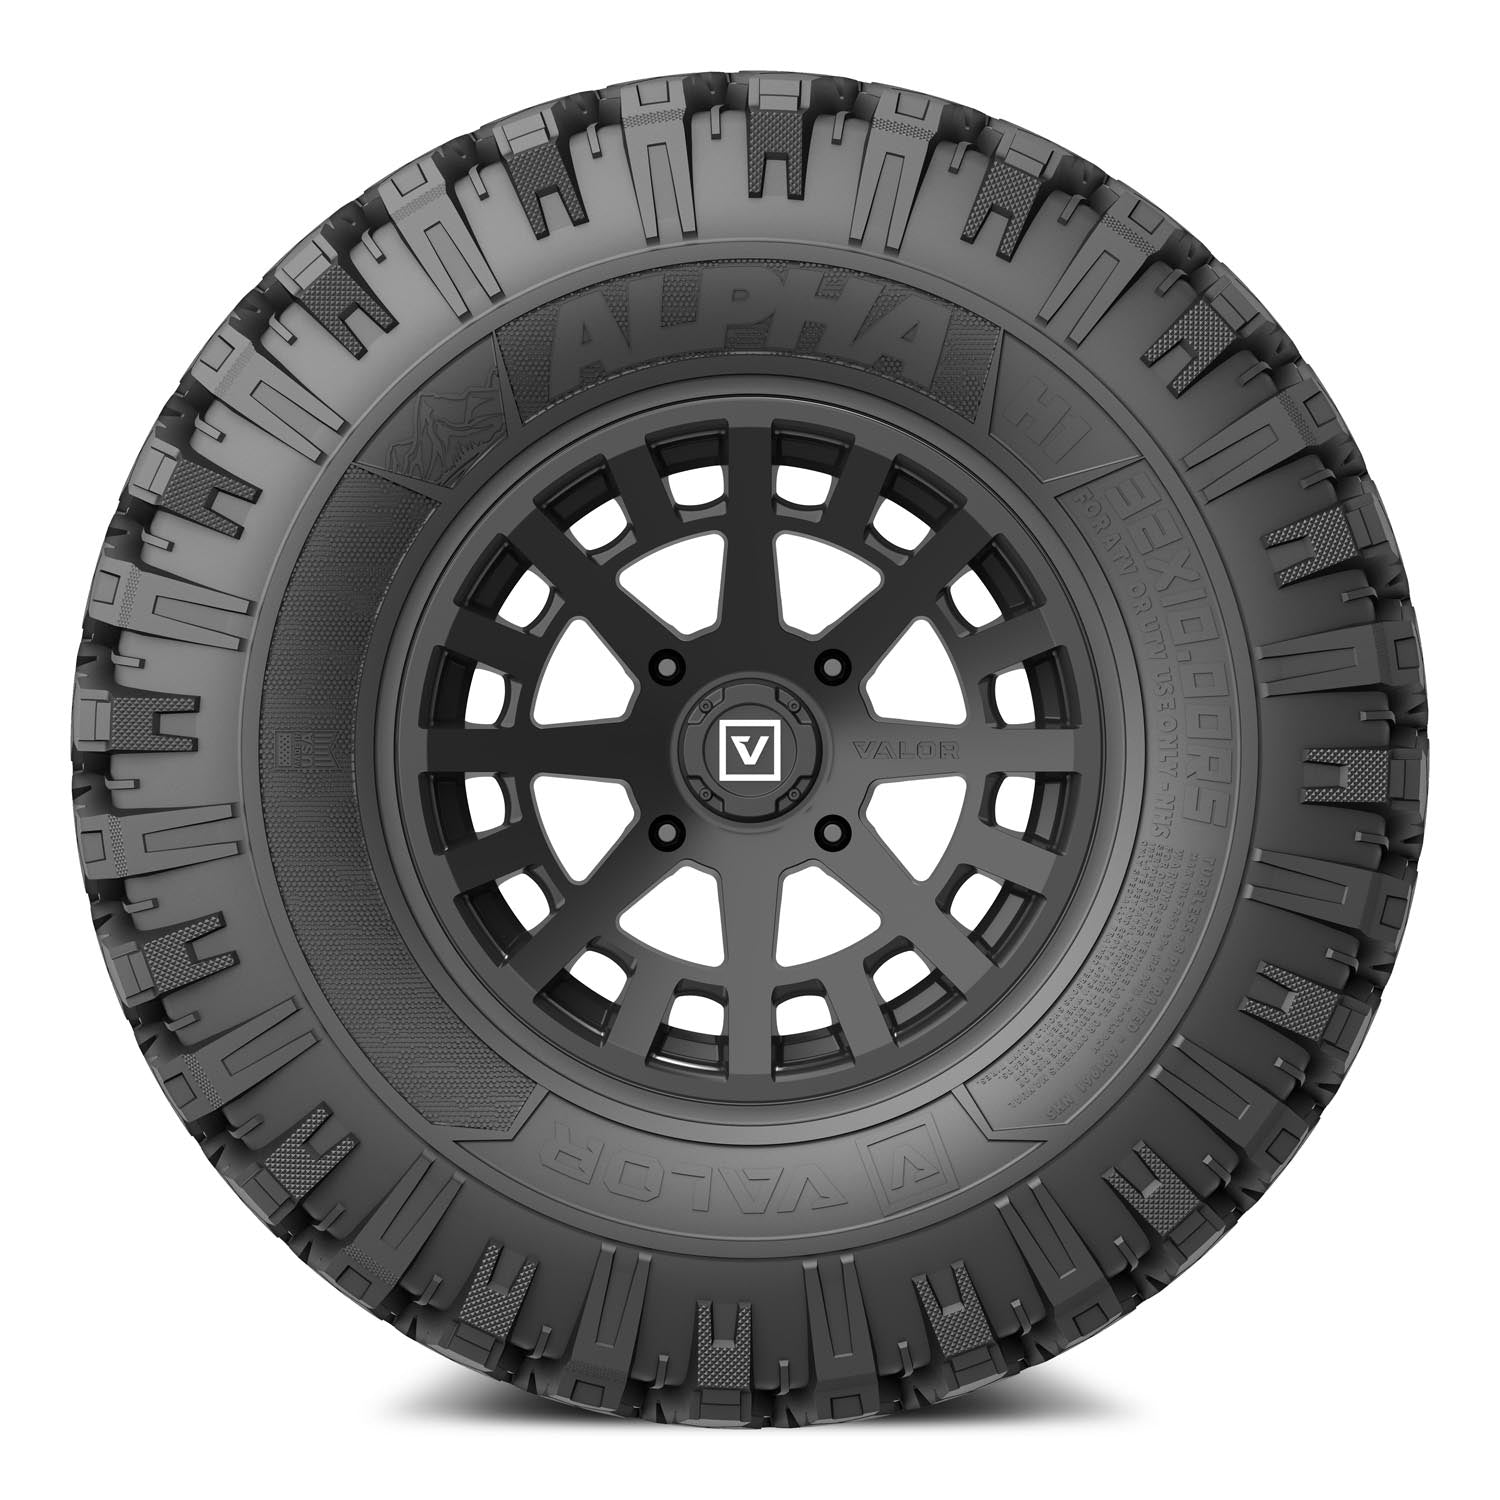 Valor Offroad UTV Tires and wheels - V04 UTV Wheel on Alpha UTV Tire